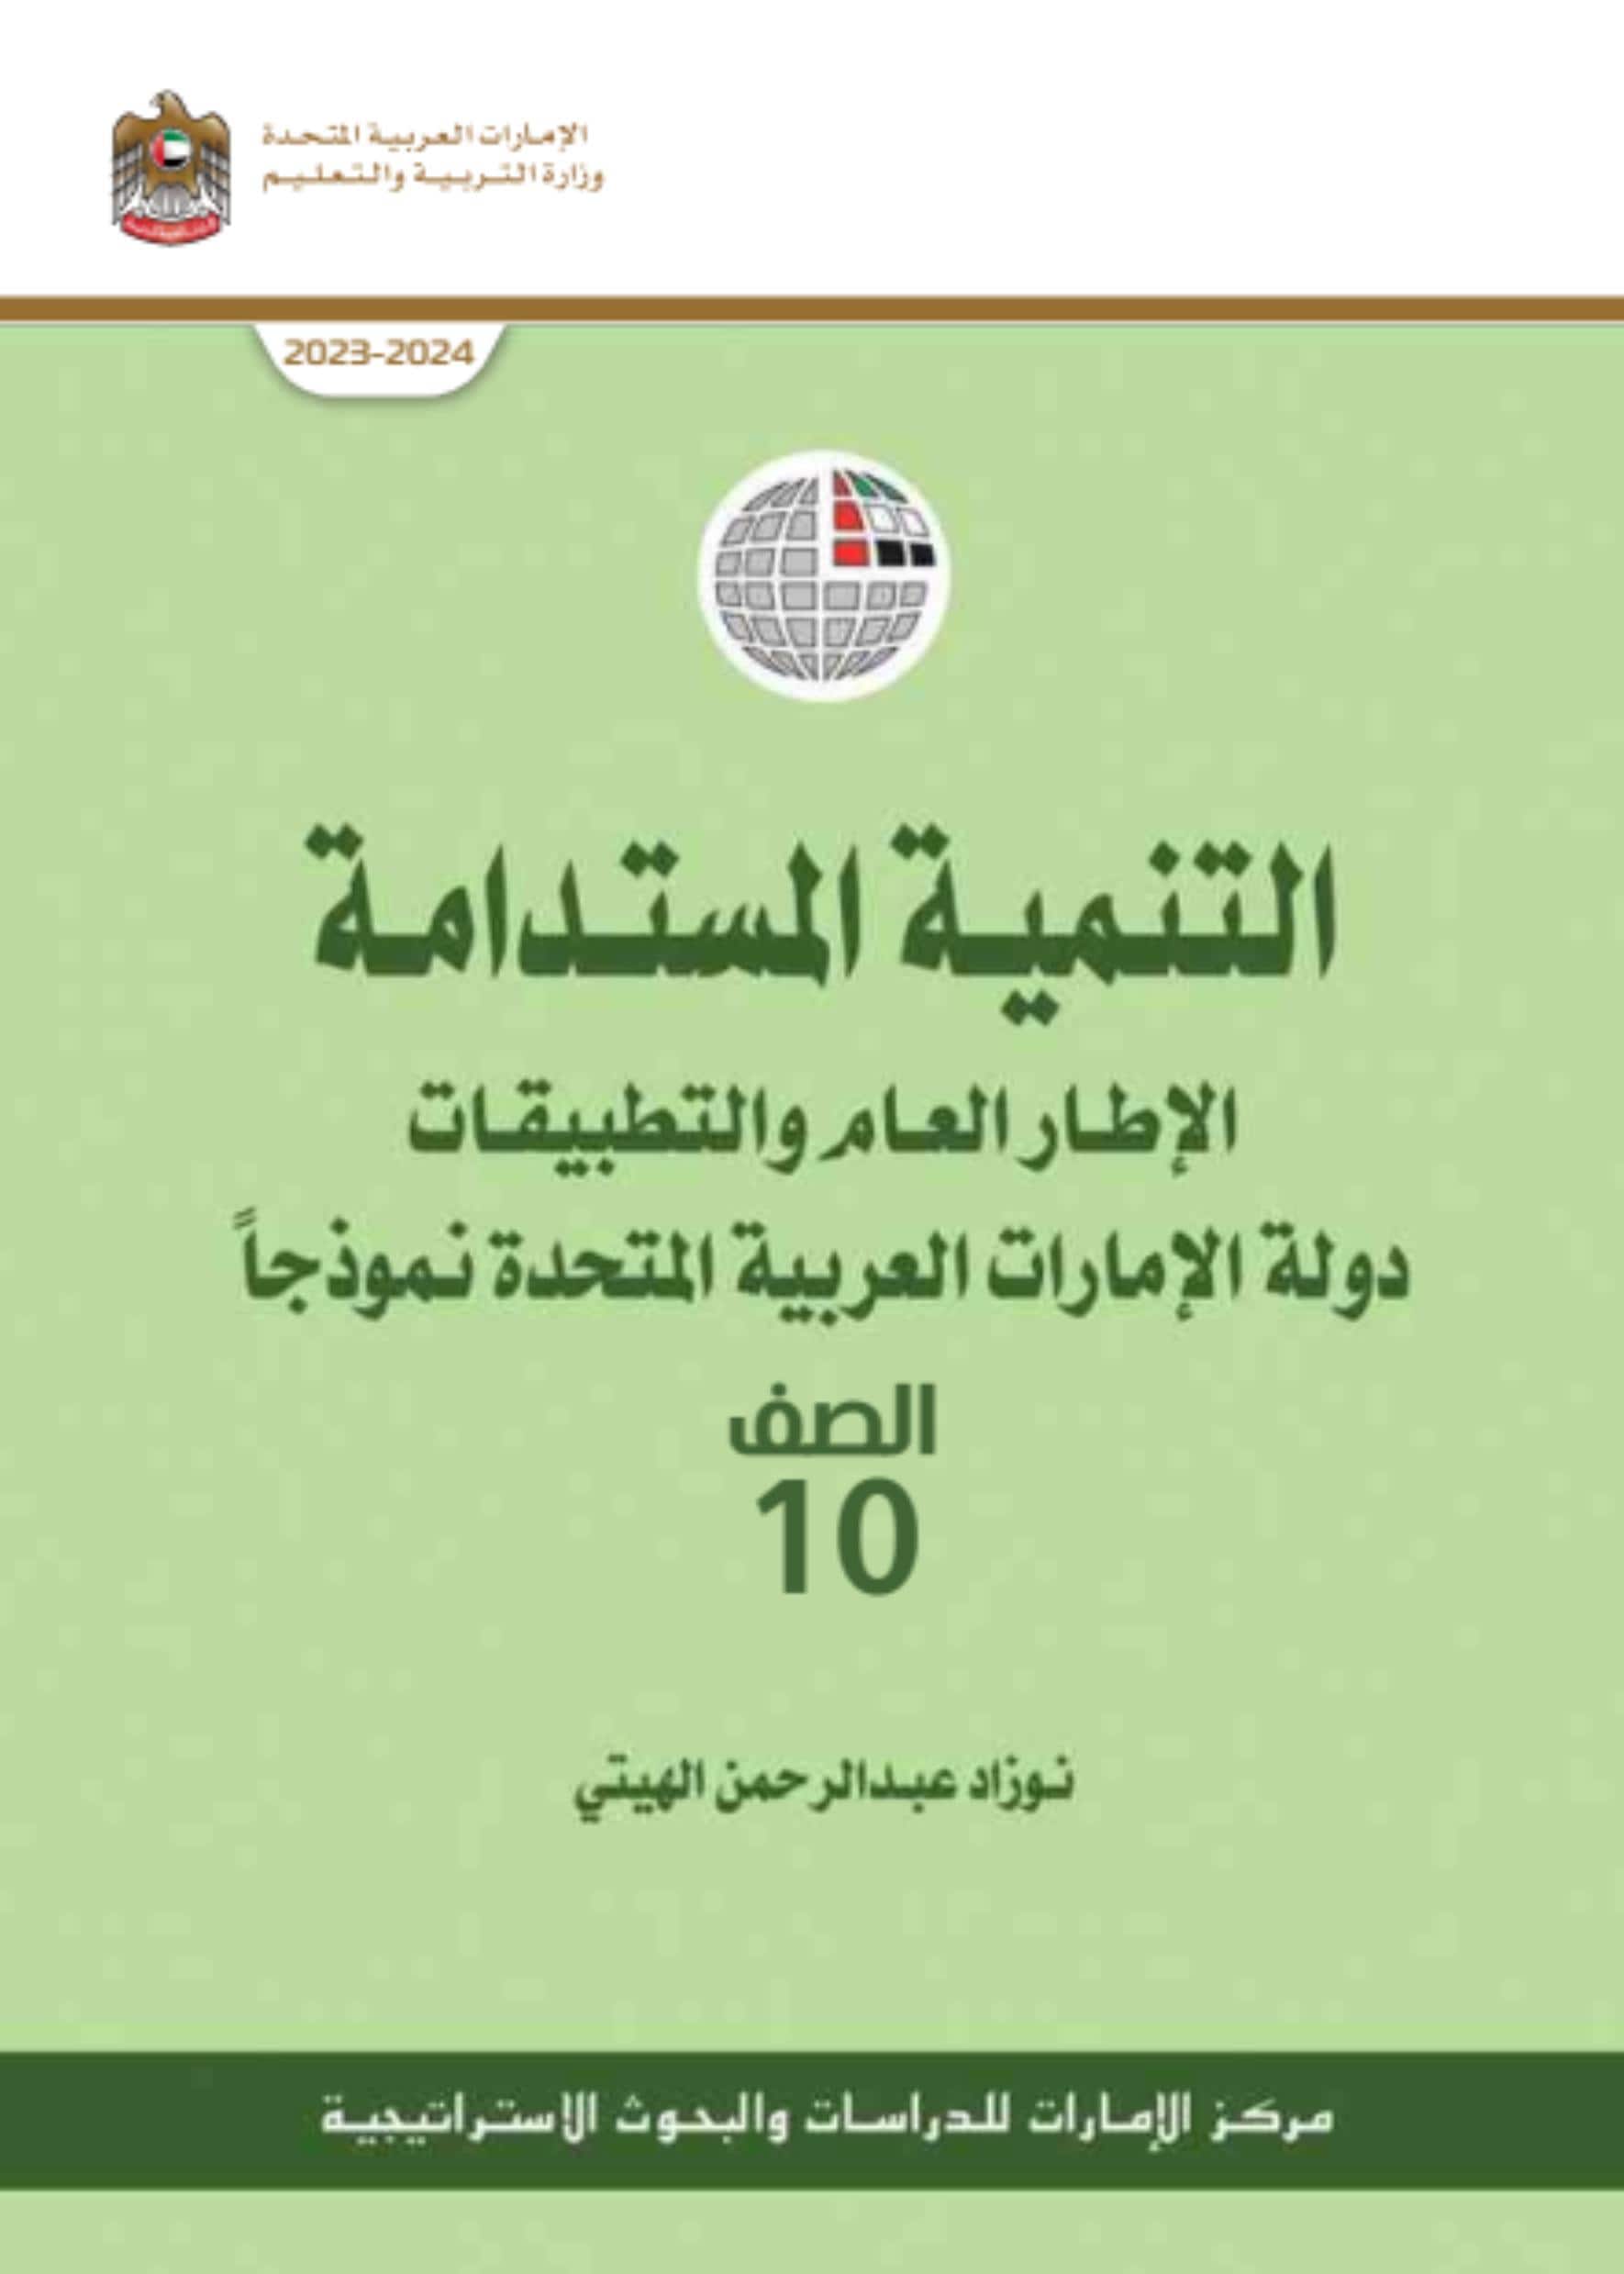 كتاب التنمية المستدامة الدراسات الإجتماعية والتربية الوطنية الصف العاشر الفصل الدراسي الثاني 2023-2024